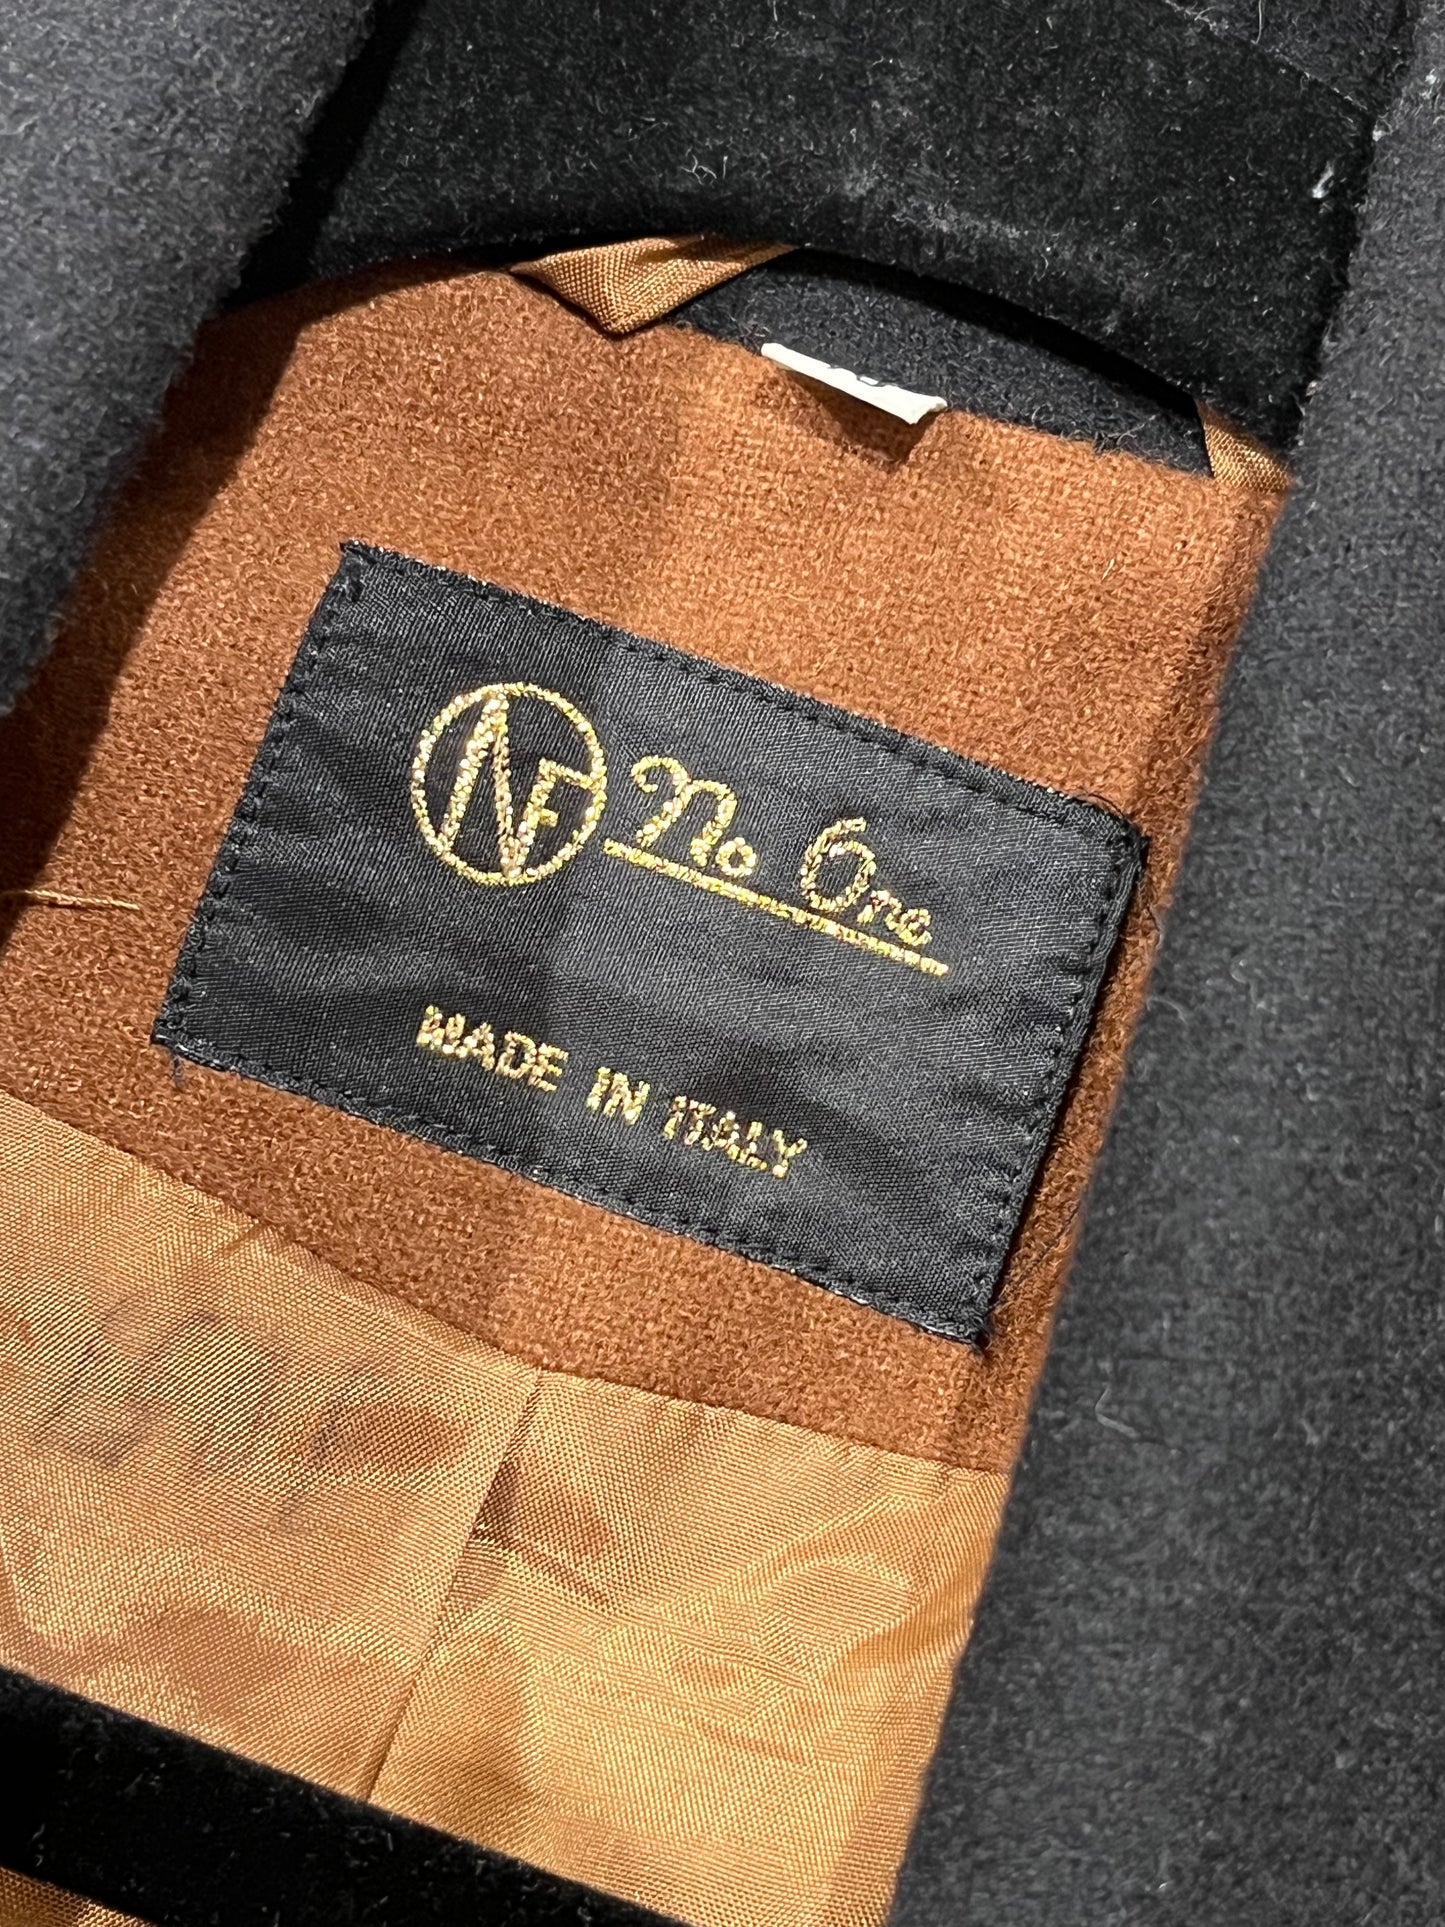 90s 'No One' Brown Wool Blazer Jacket / Medium